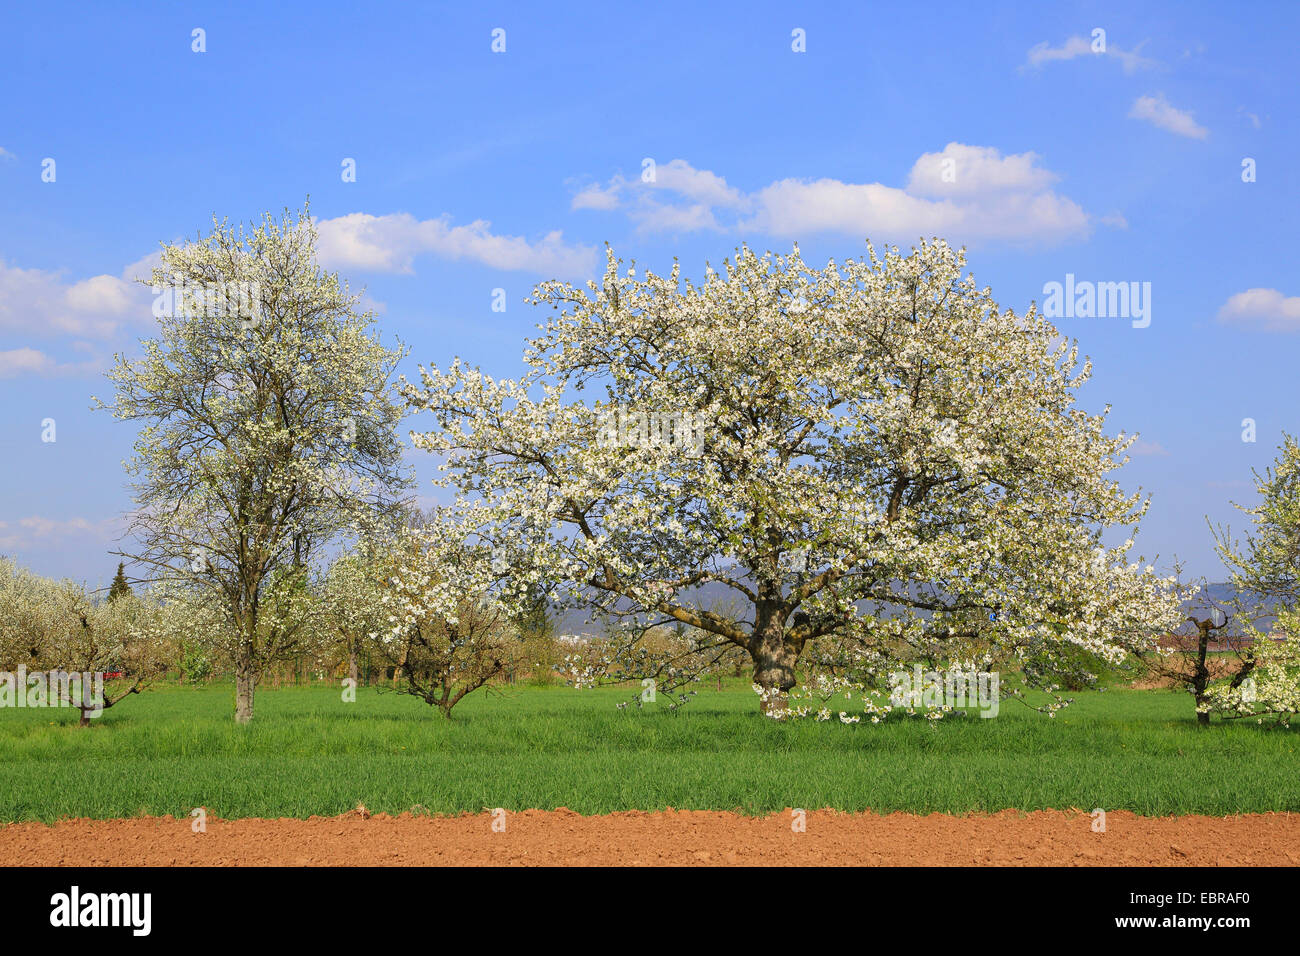 Blooming frutales en una pradera, Alemania Foto de stock